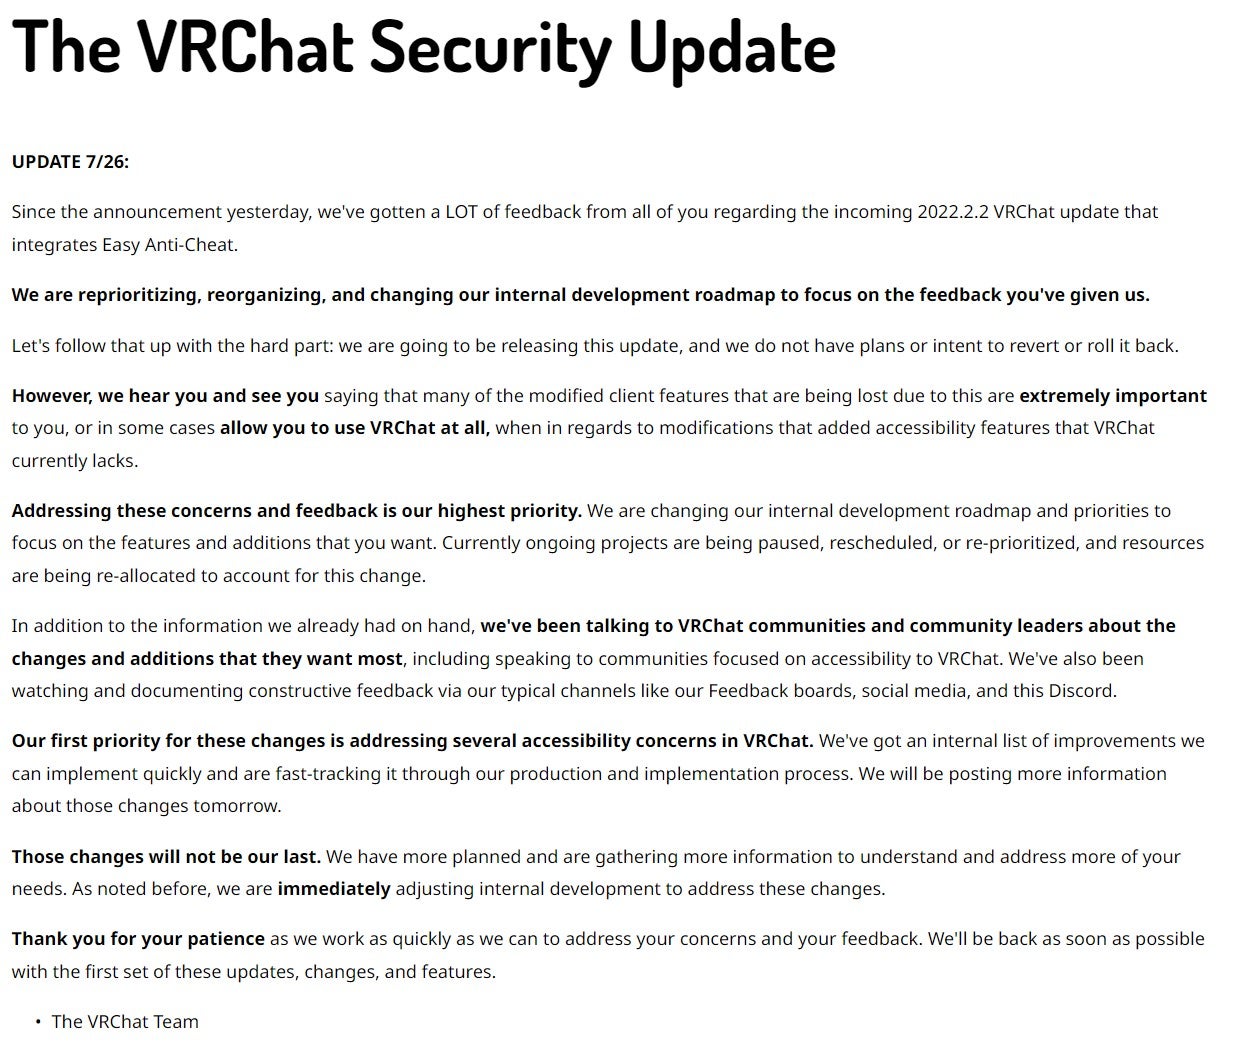 Post del blog VRChat aggiornato per annunciare l'aggiornamento Easy Anti-Cheat.